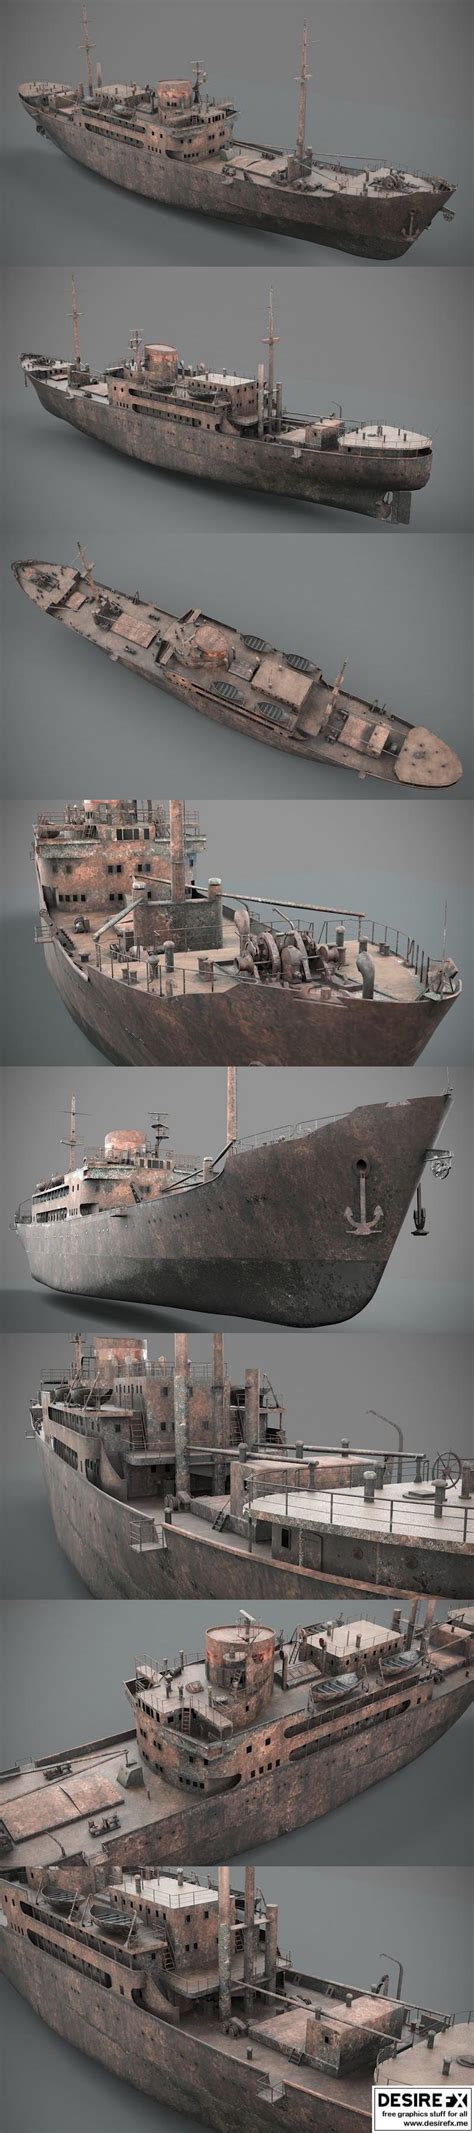 Desire FX 3d Models Old Rusted Abandoned Vessel 3D Model